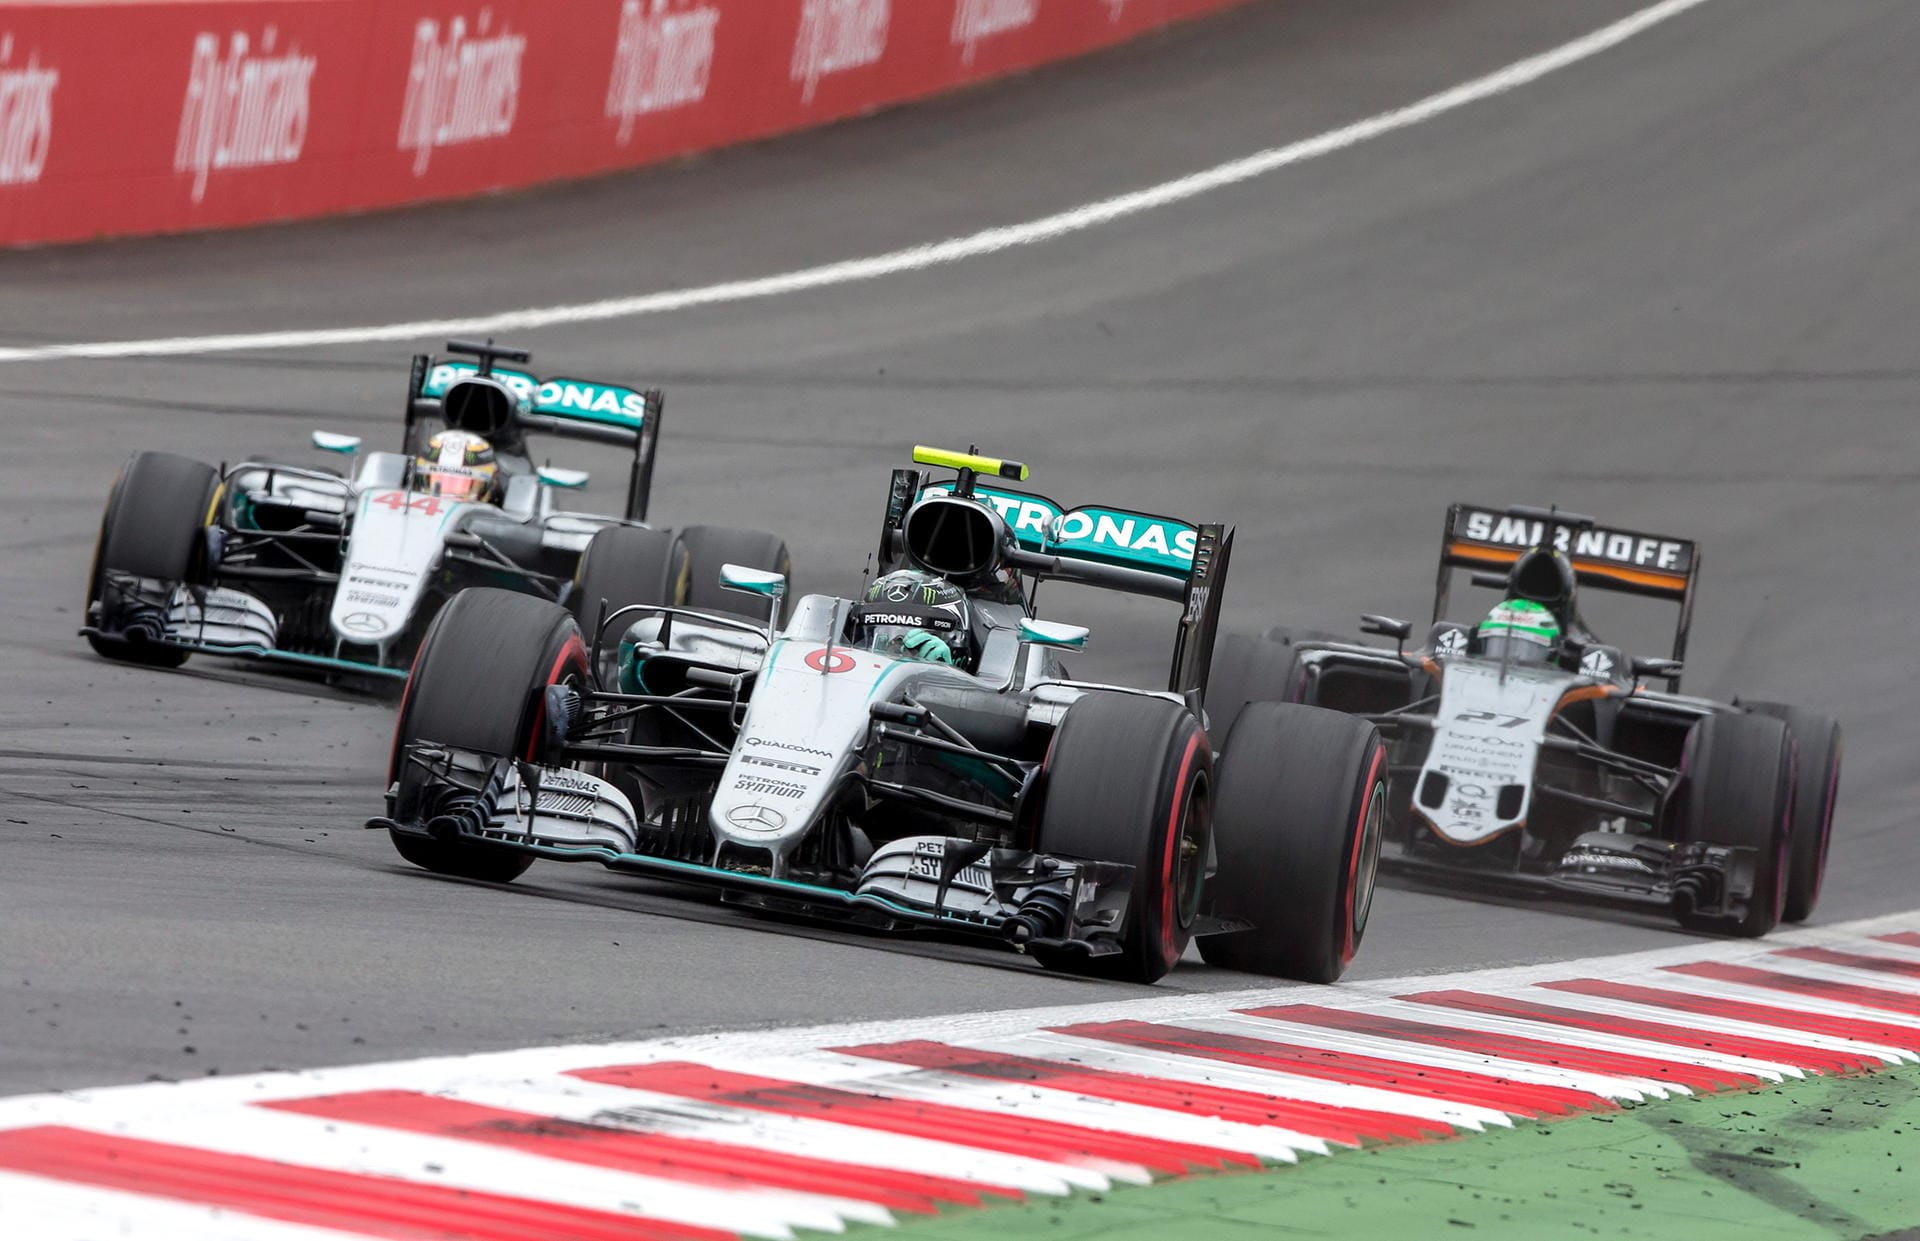 Im Rennen liefern sich Hamilton (links) und Rosberg (vorne) ein packendes Duell - mit Crash in der letzten Runde.